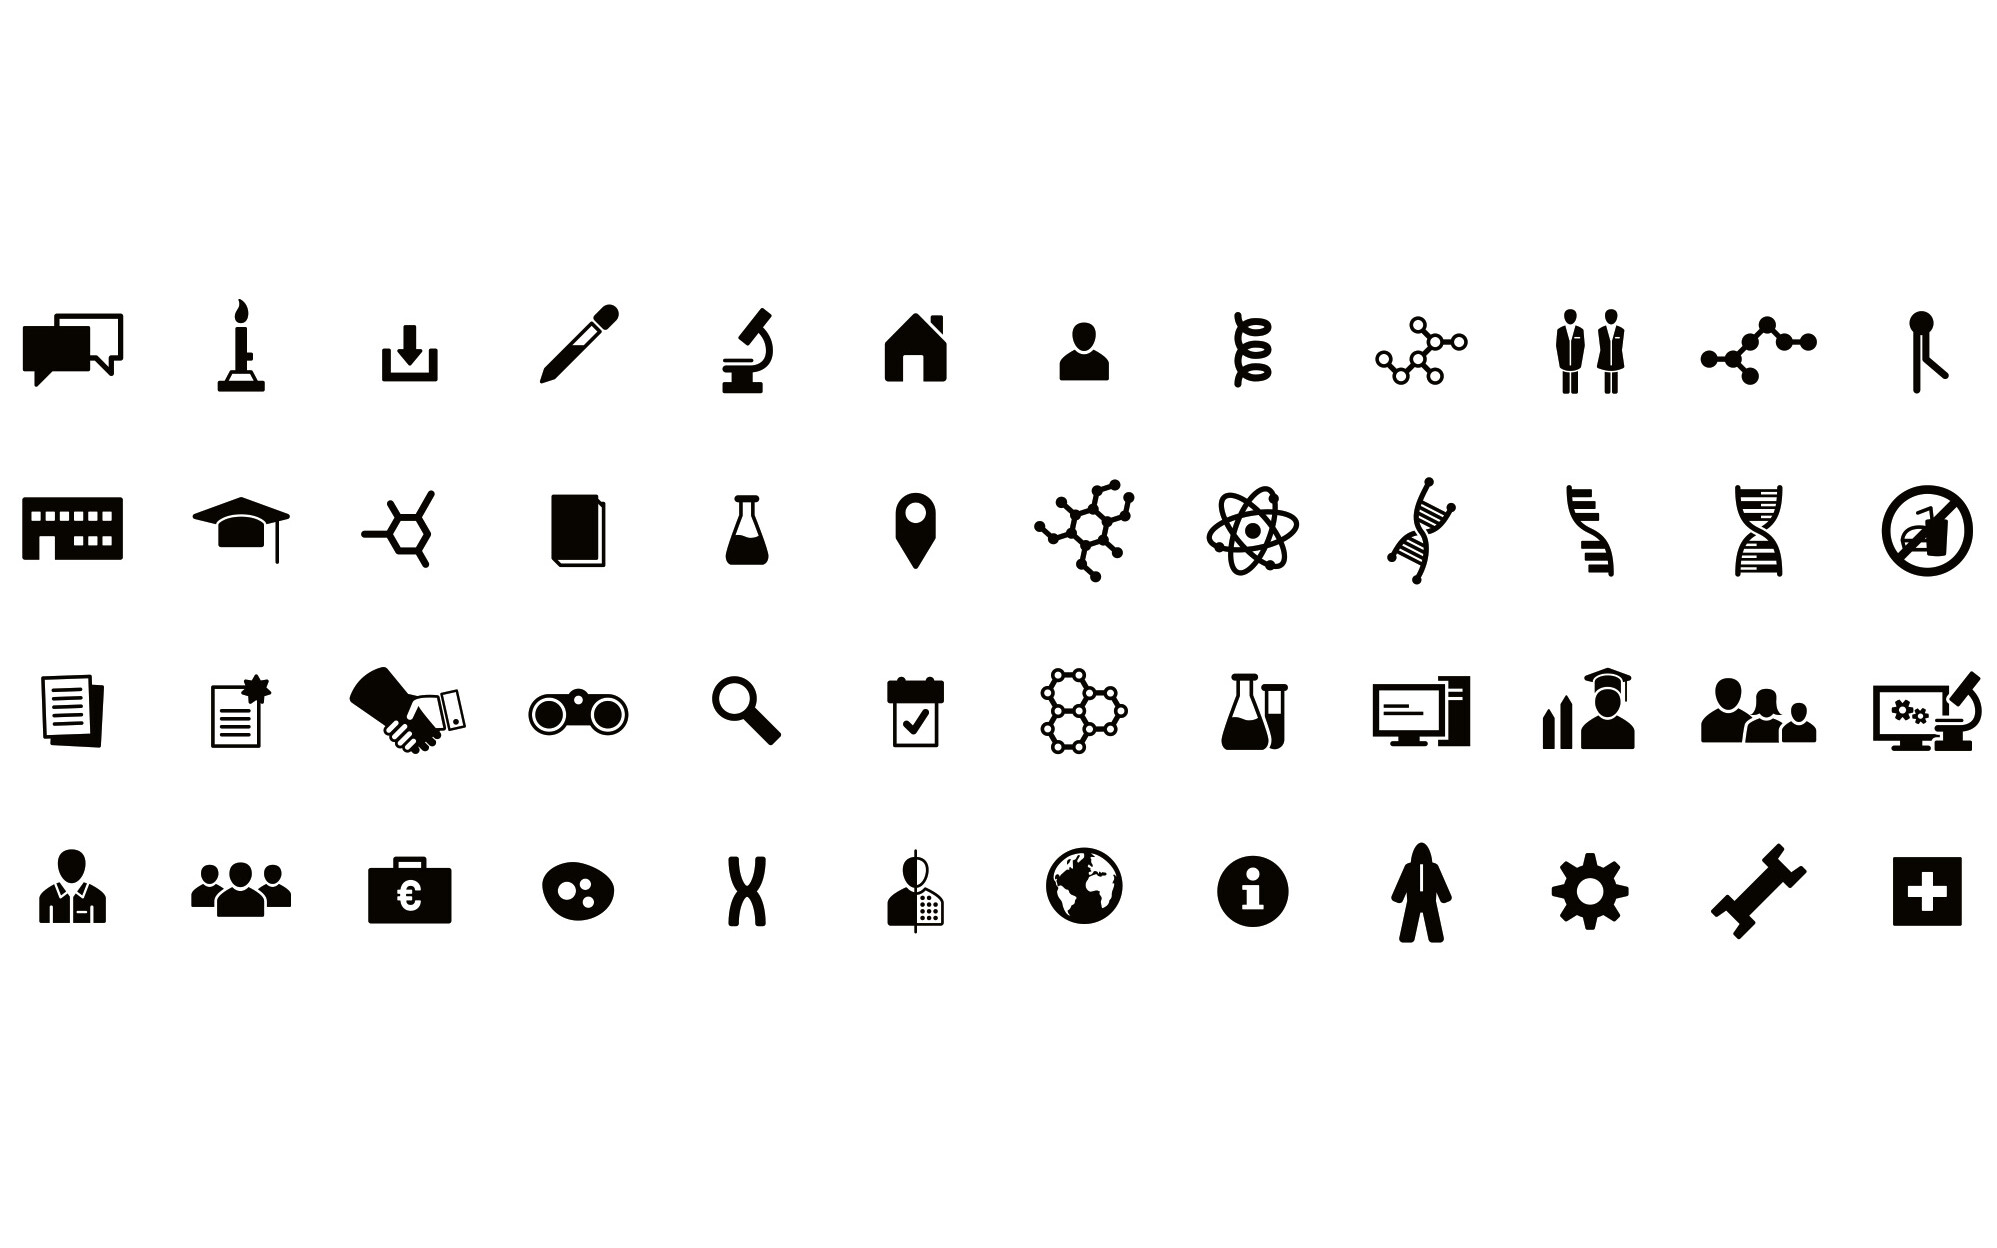 Umfangreiches Iconset mit Symbolen und Piktogrammen für unterschiedliche Zwecke